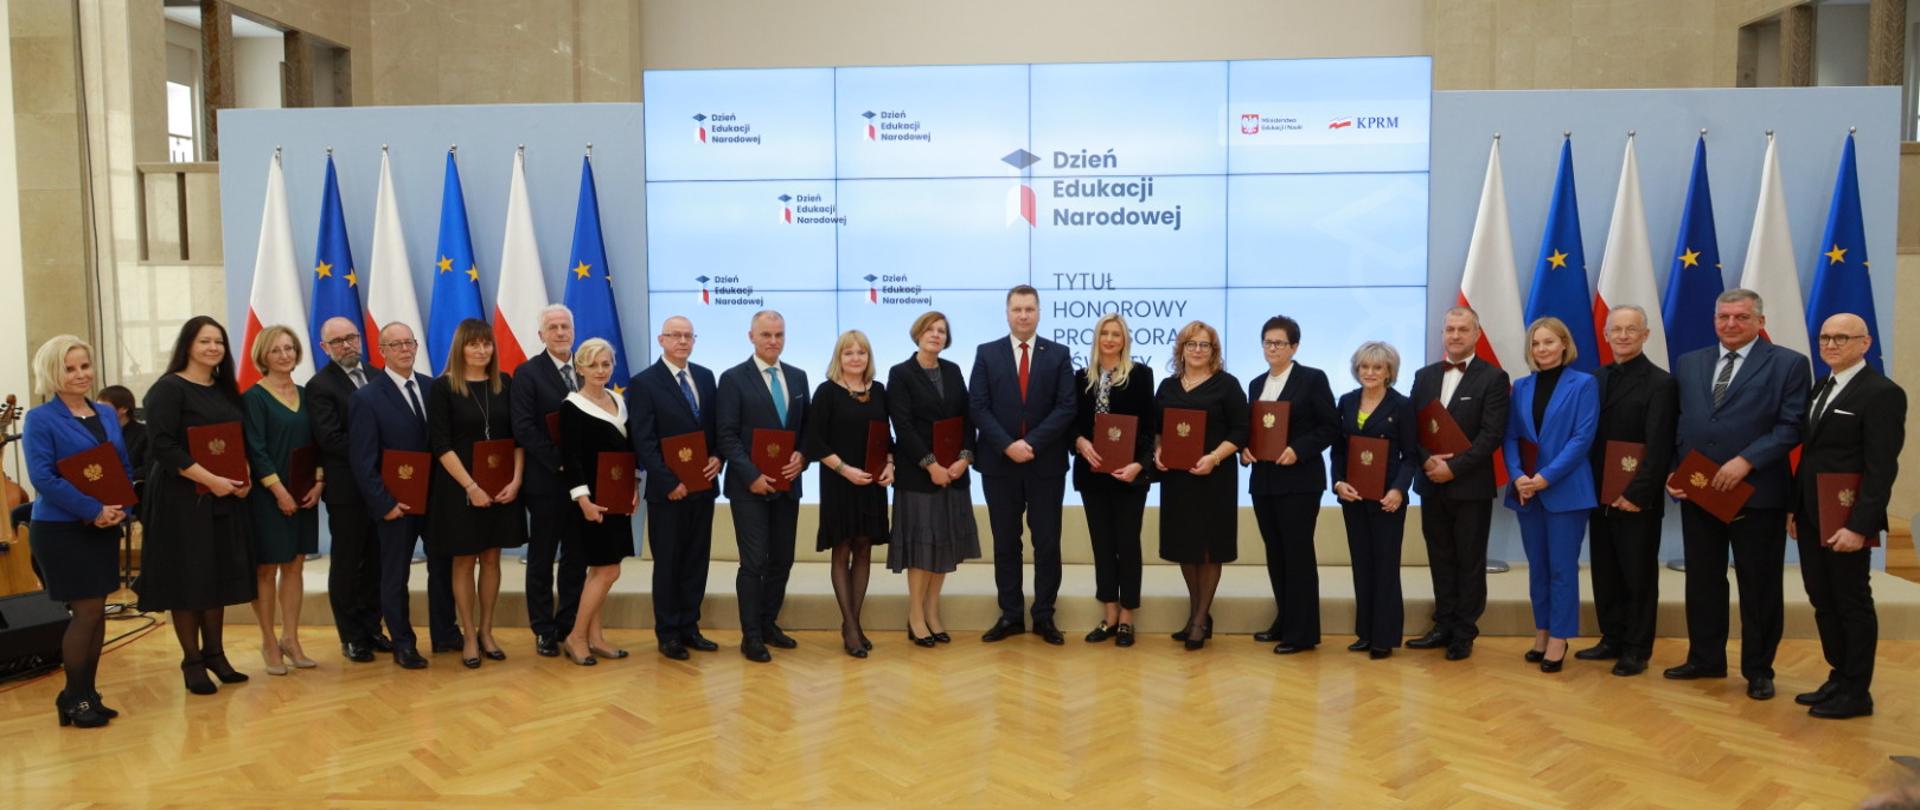 Minister Czarnek wraz z nagrodzonymi nauczycielami